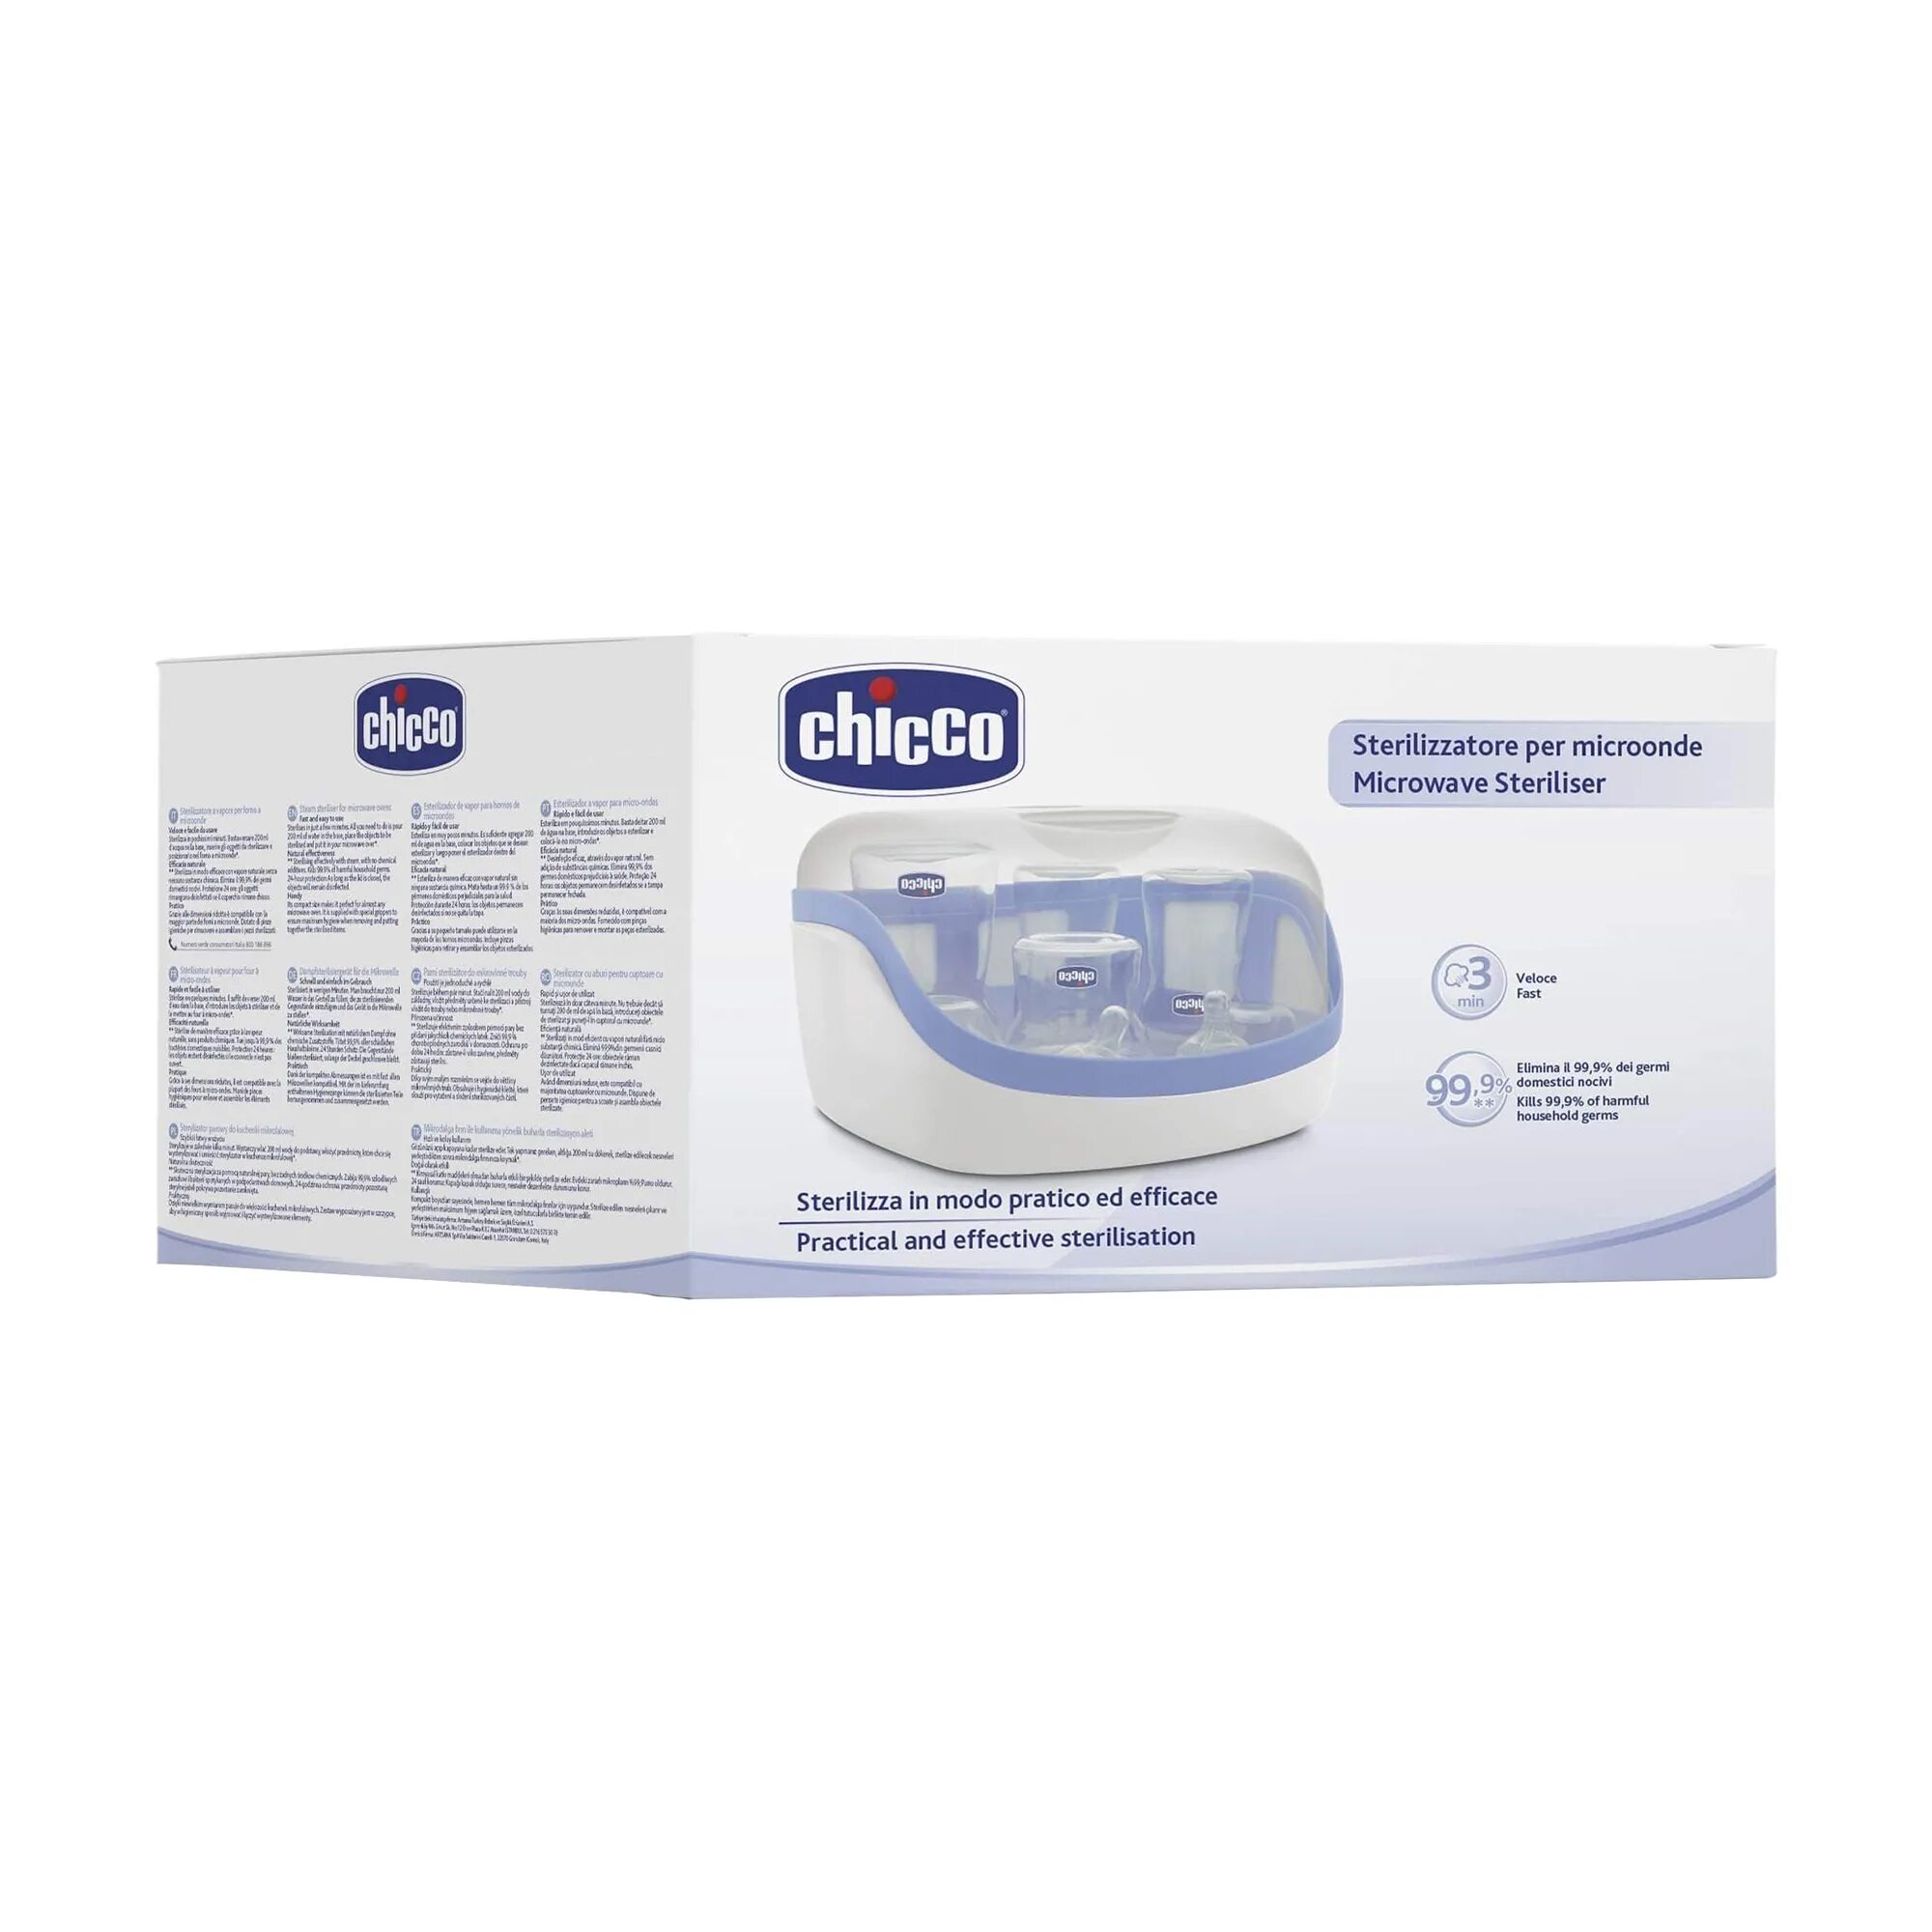 Стерилизатор для микроволновой печи Chicco. Chicco 65846.50. Стерилизатор для микроволновой печи New Chicco. Chicco steril natural для СВЧ.